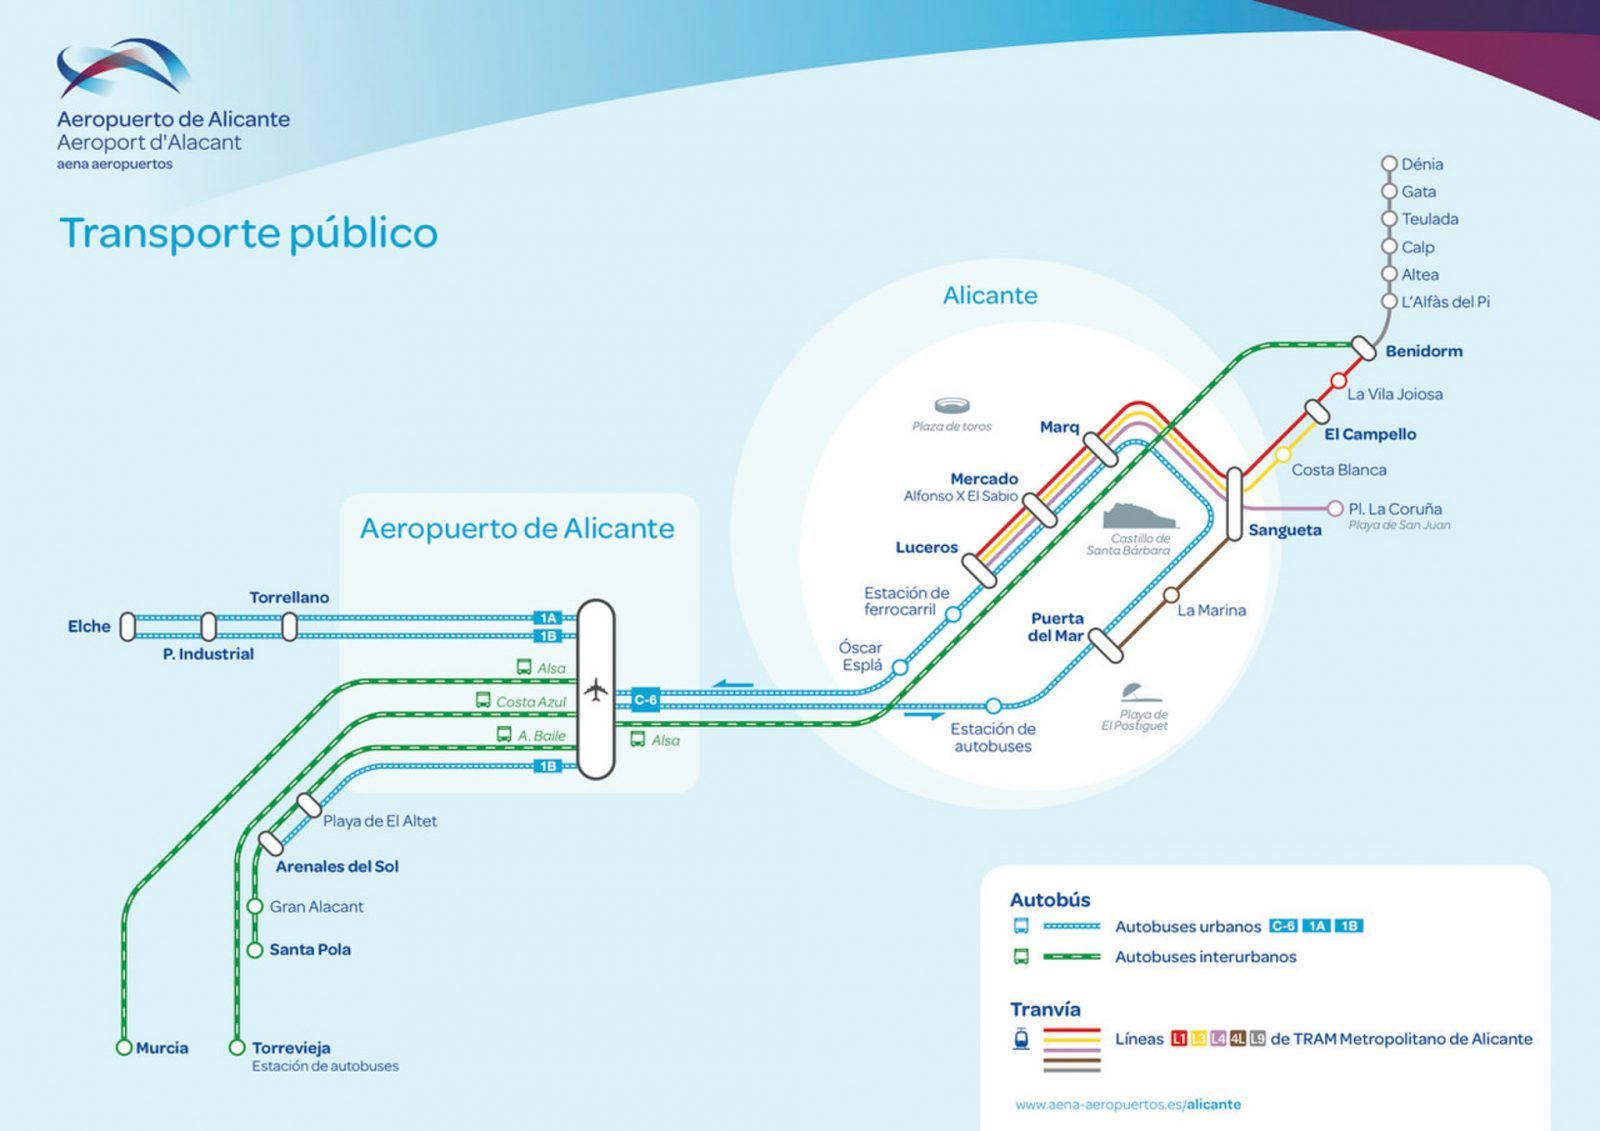 Diagramm der öffentlichen Verkehrsmittel vom Flughafen Alicante-Elche